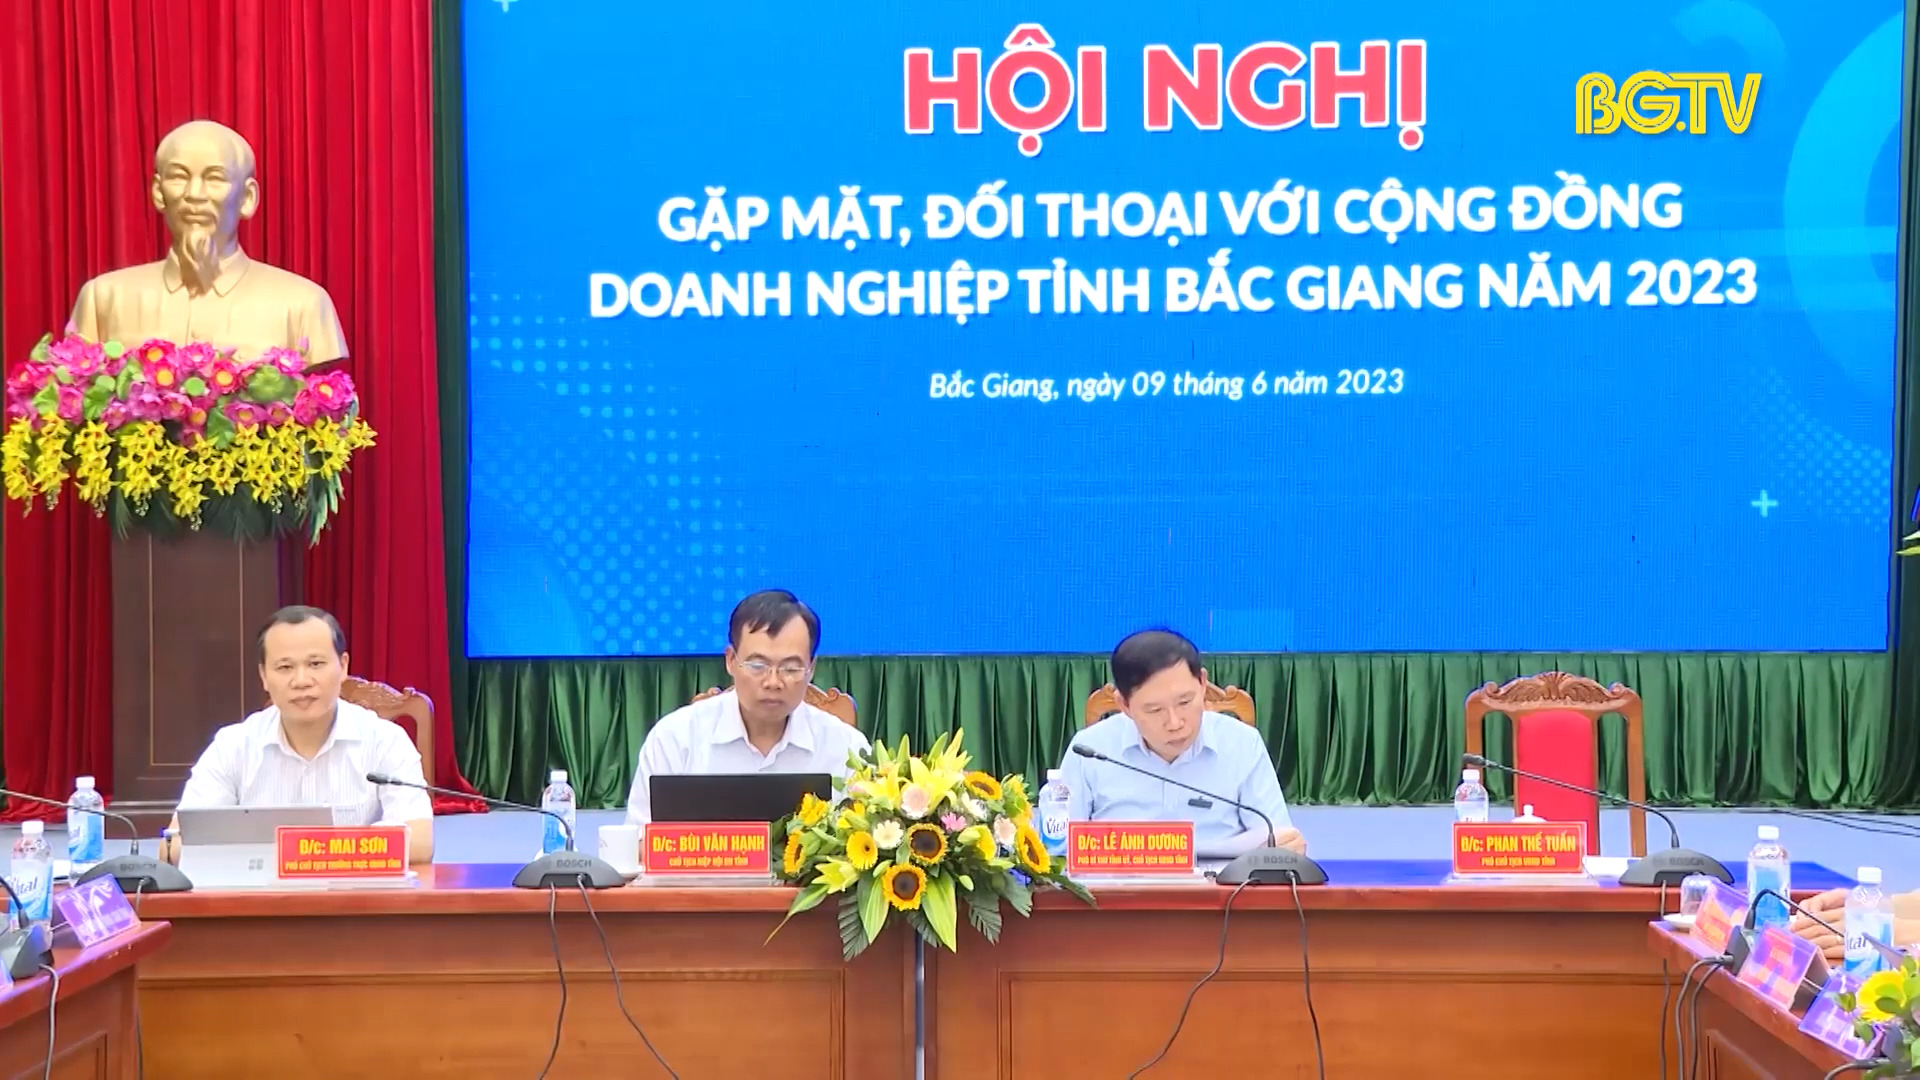 Hội nghị ” Gặp mặt, đối thoại với cộng đồng doanh nghiệp tỉnh Bắc Giang năm 2023″